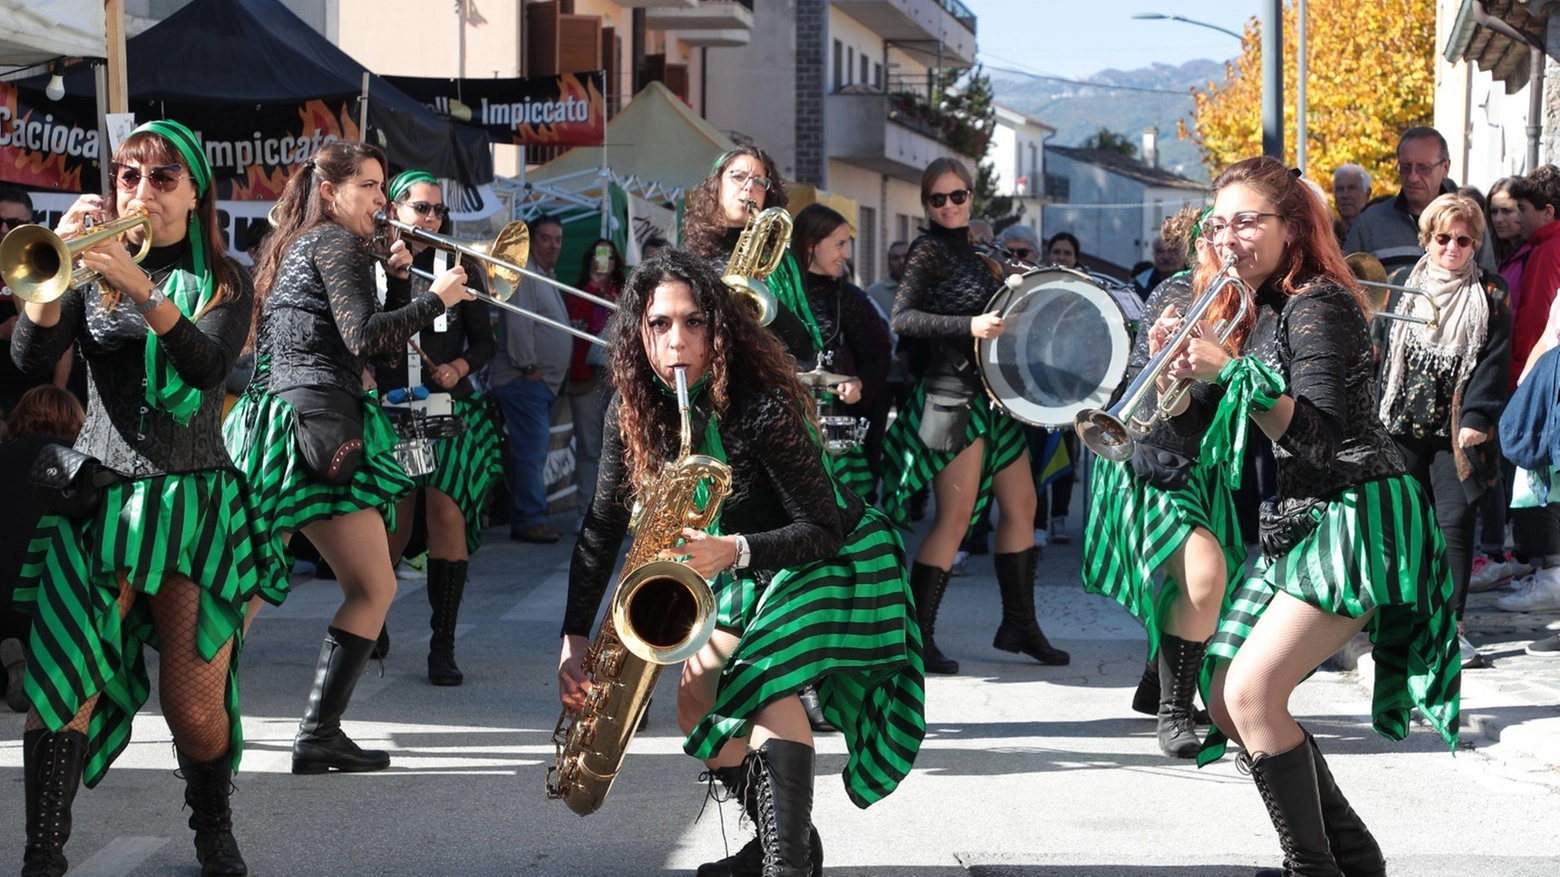 Sabato alle 16,30 il centro storico di San Giovanni Valdarno accoglierà le ragazze della prima e unica street band italiana tutta al femminile